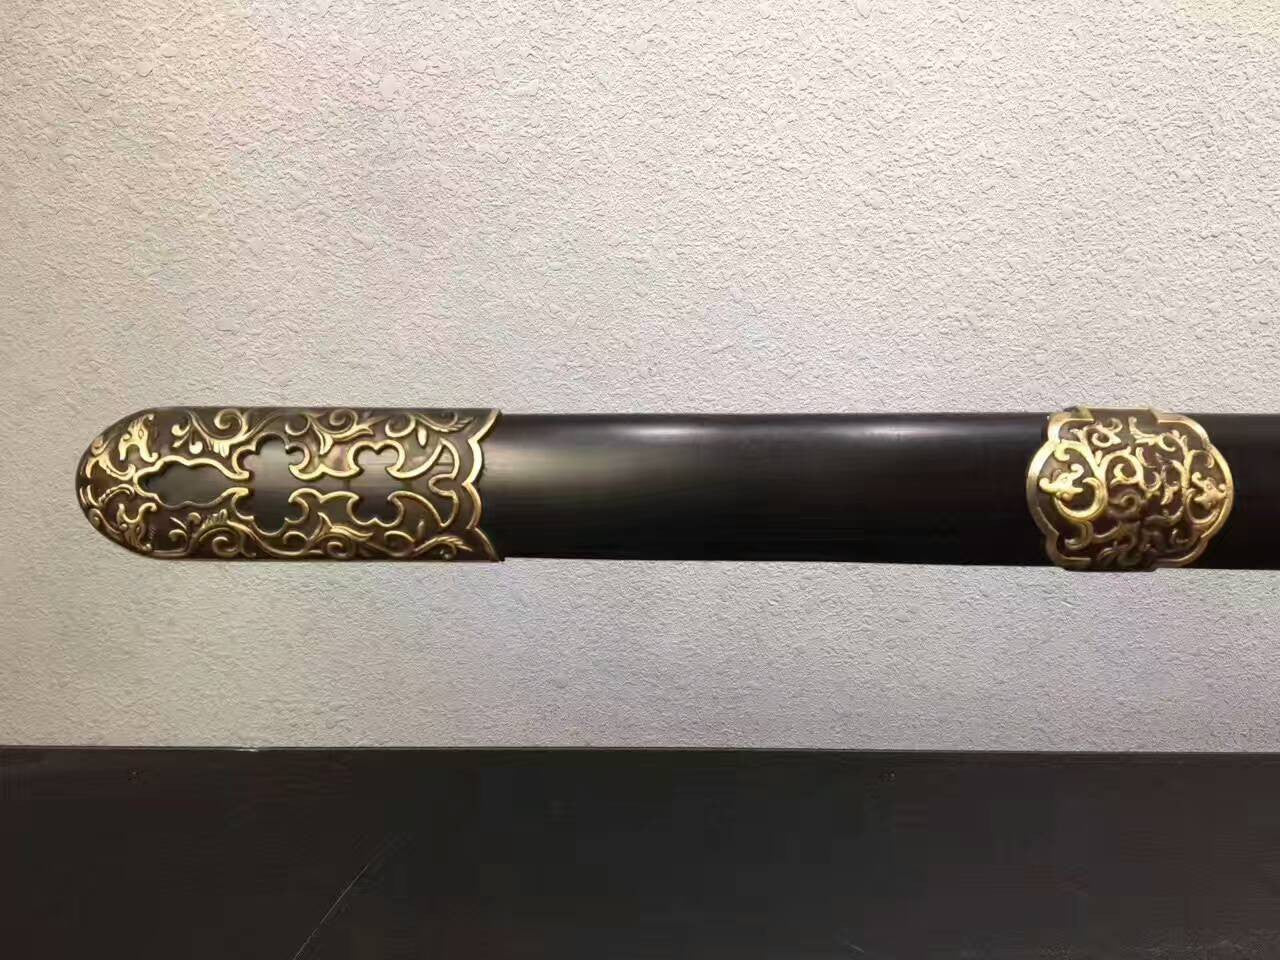 Qianlong sword,Folding pattern steel blade,Ebony Scabbard,Brass fittings - Chinese sword shop